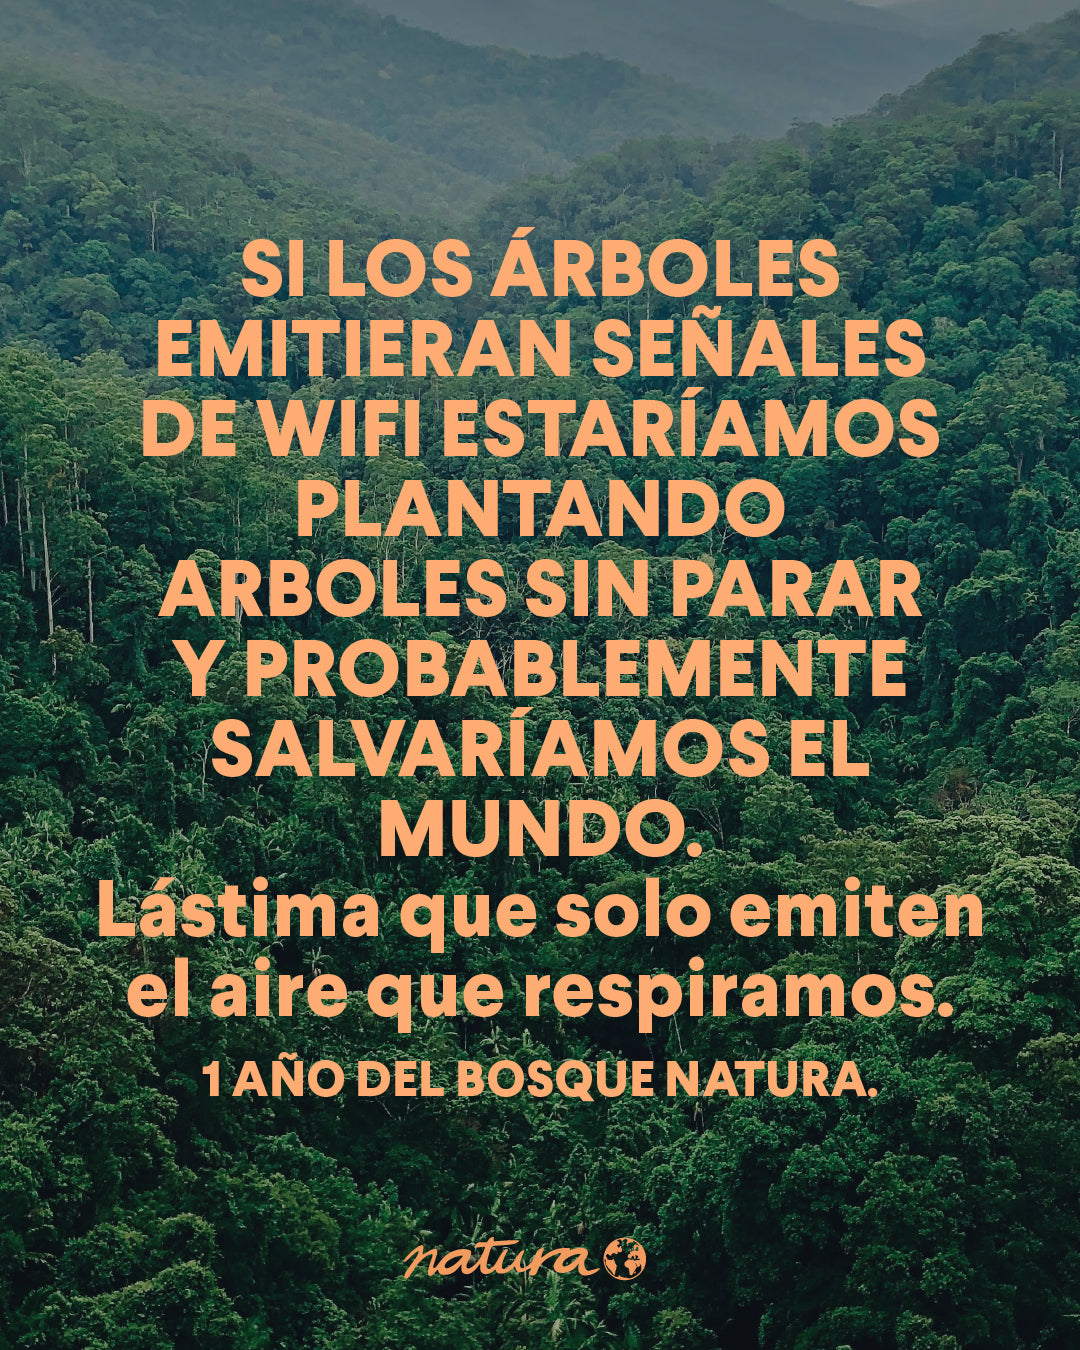 El bosque Natura sigue creciendo junto a Saving the Amazon 🌳